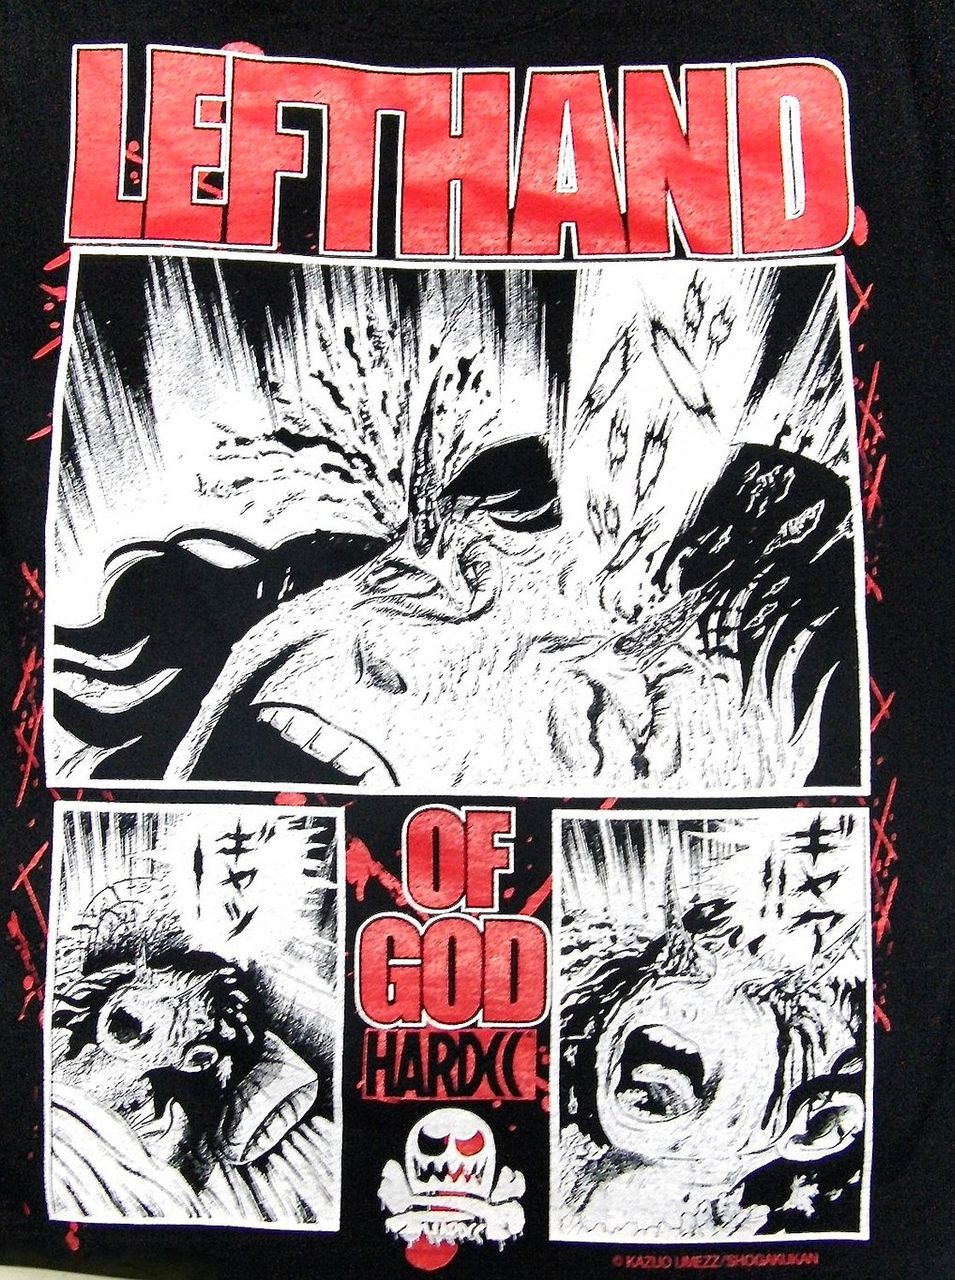 楳図かずお 神の左手悪魔の右手 のtシャツが発売 80年代最新情報